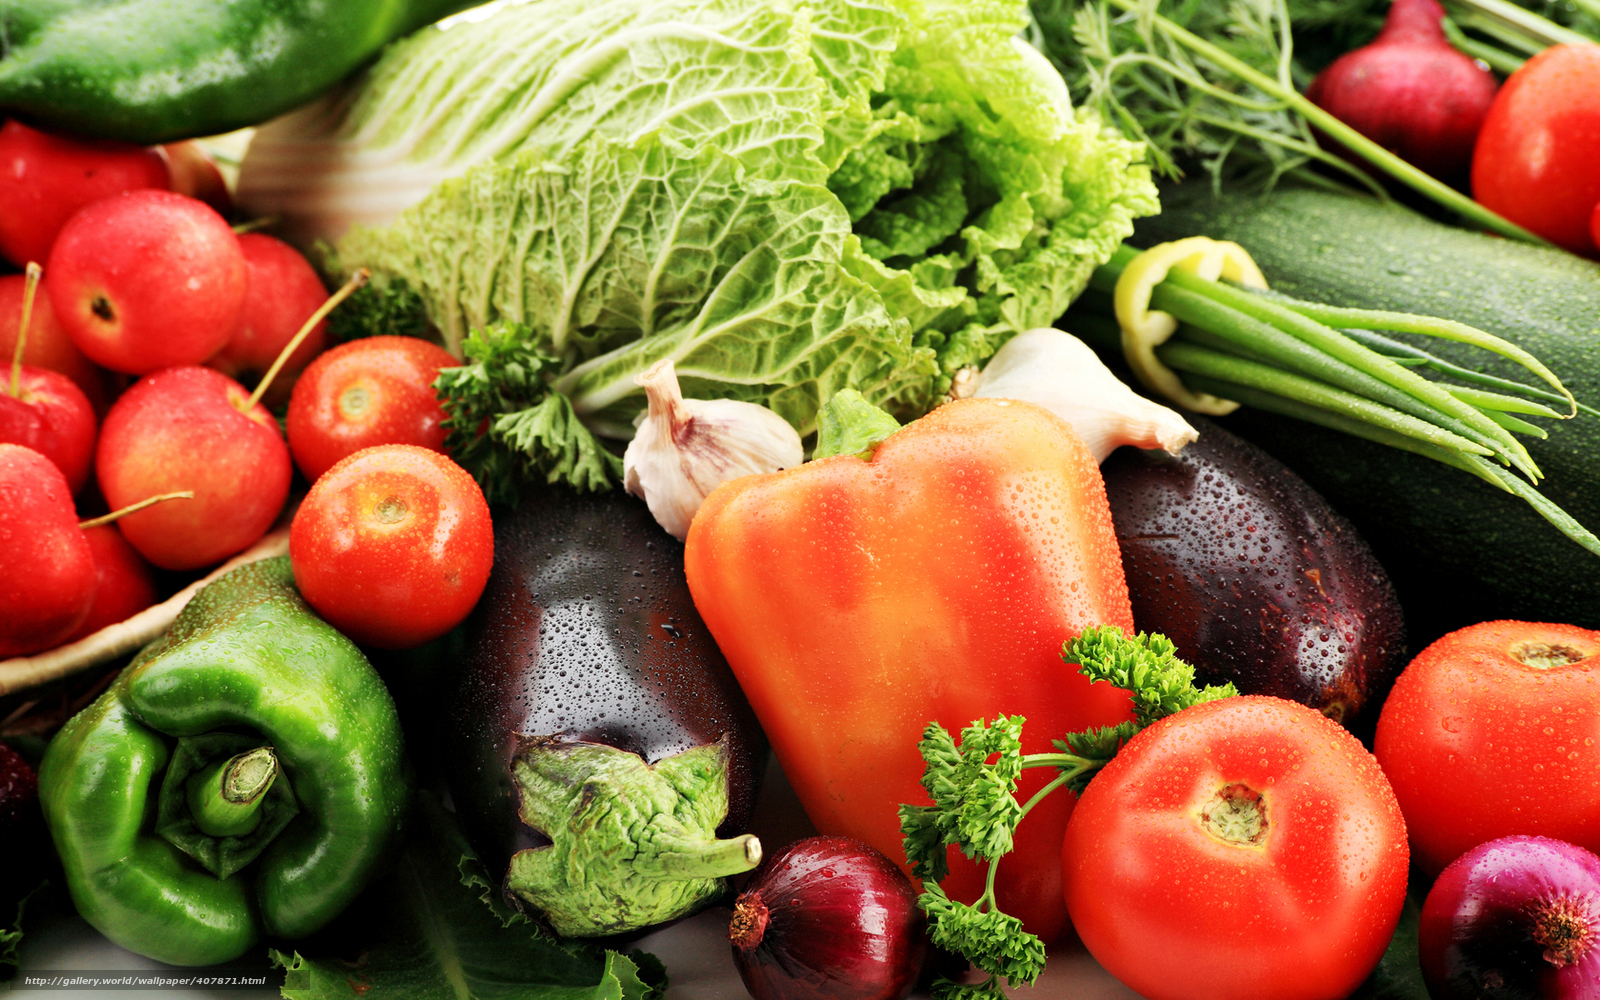 Preços de frutas e verduras tiveram histórico geral de queda nas centrais de abastecimento